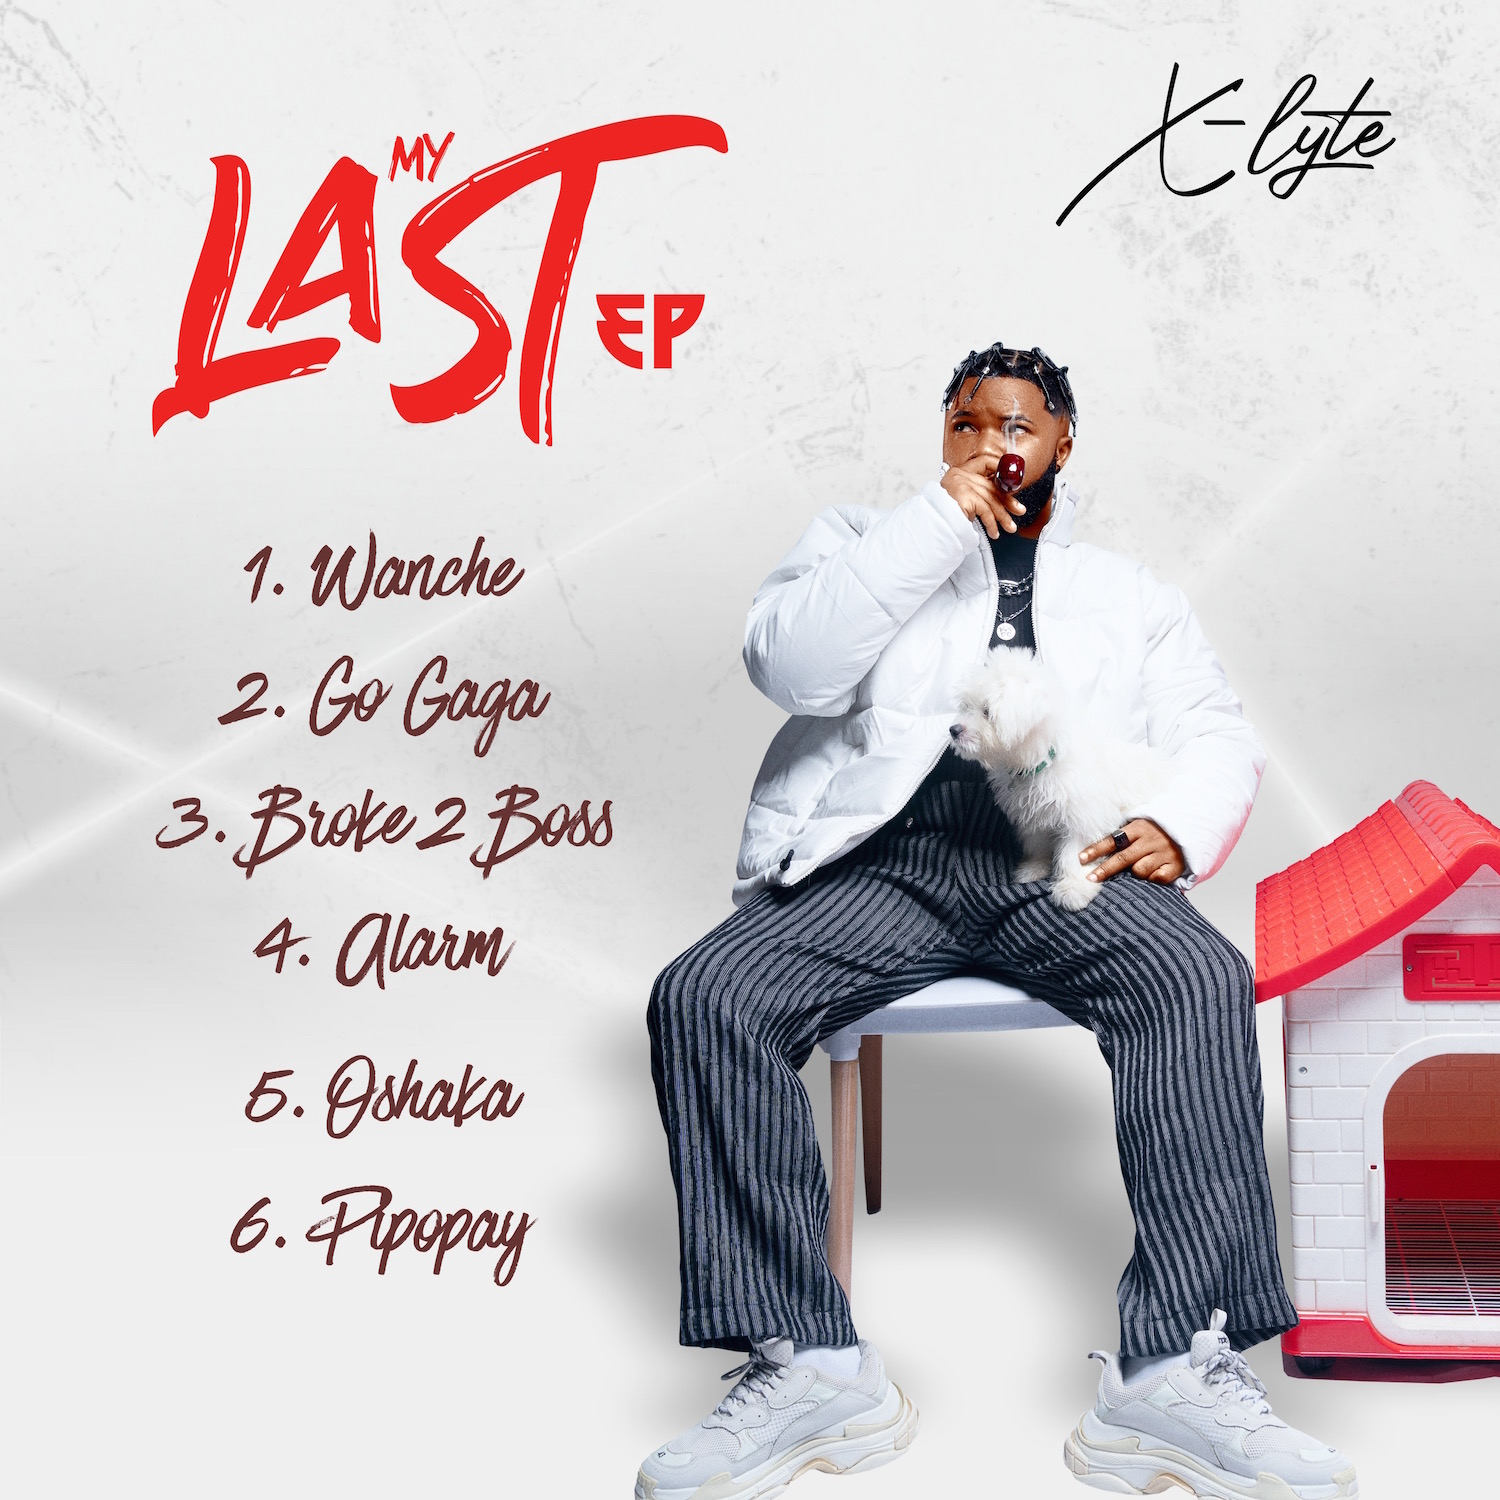 X-Lyte “My Last EP” Tracklist